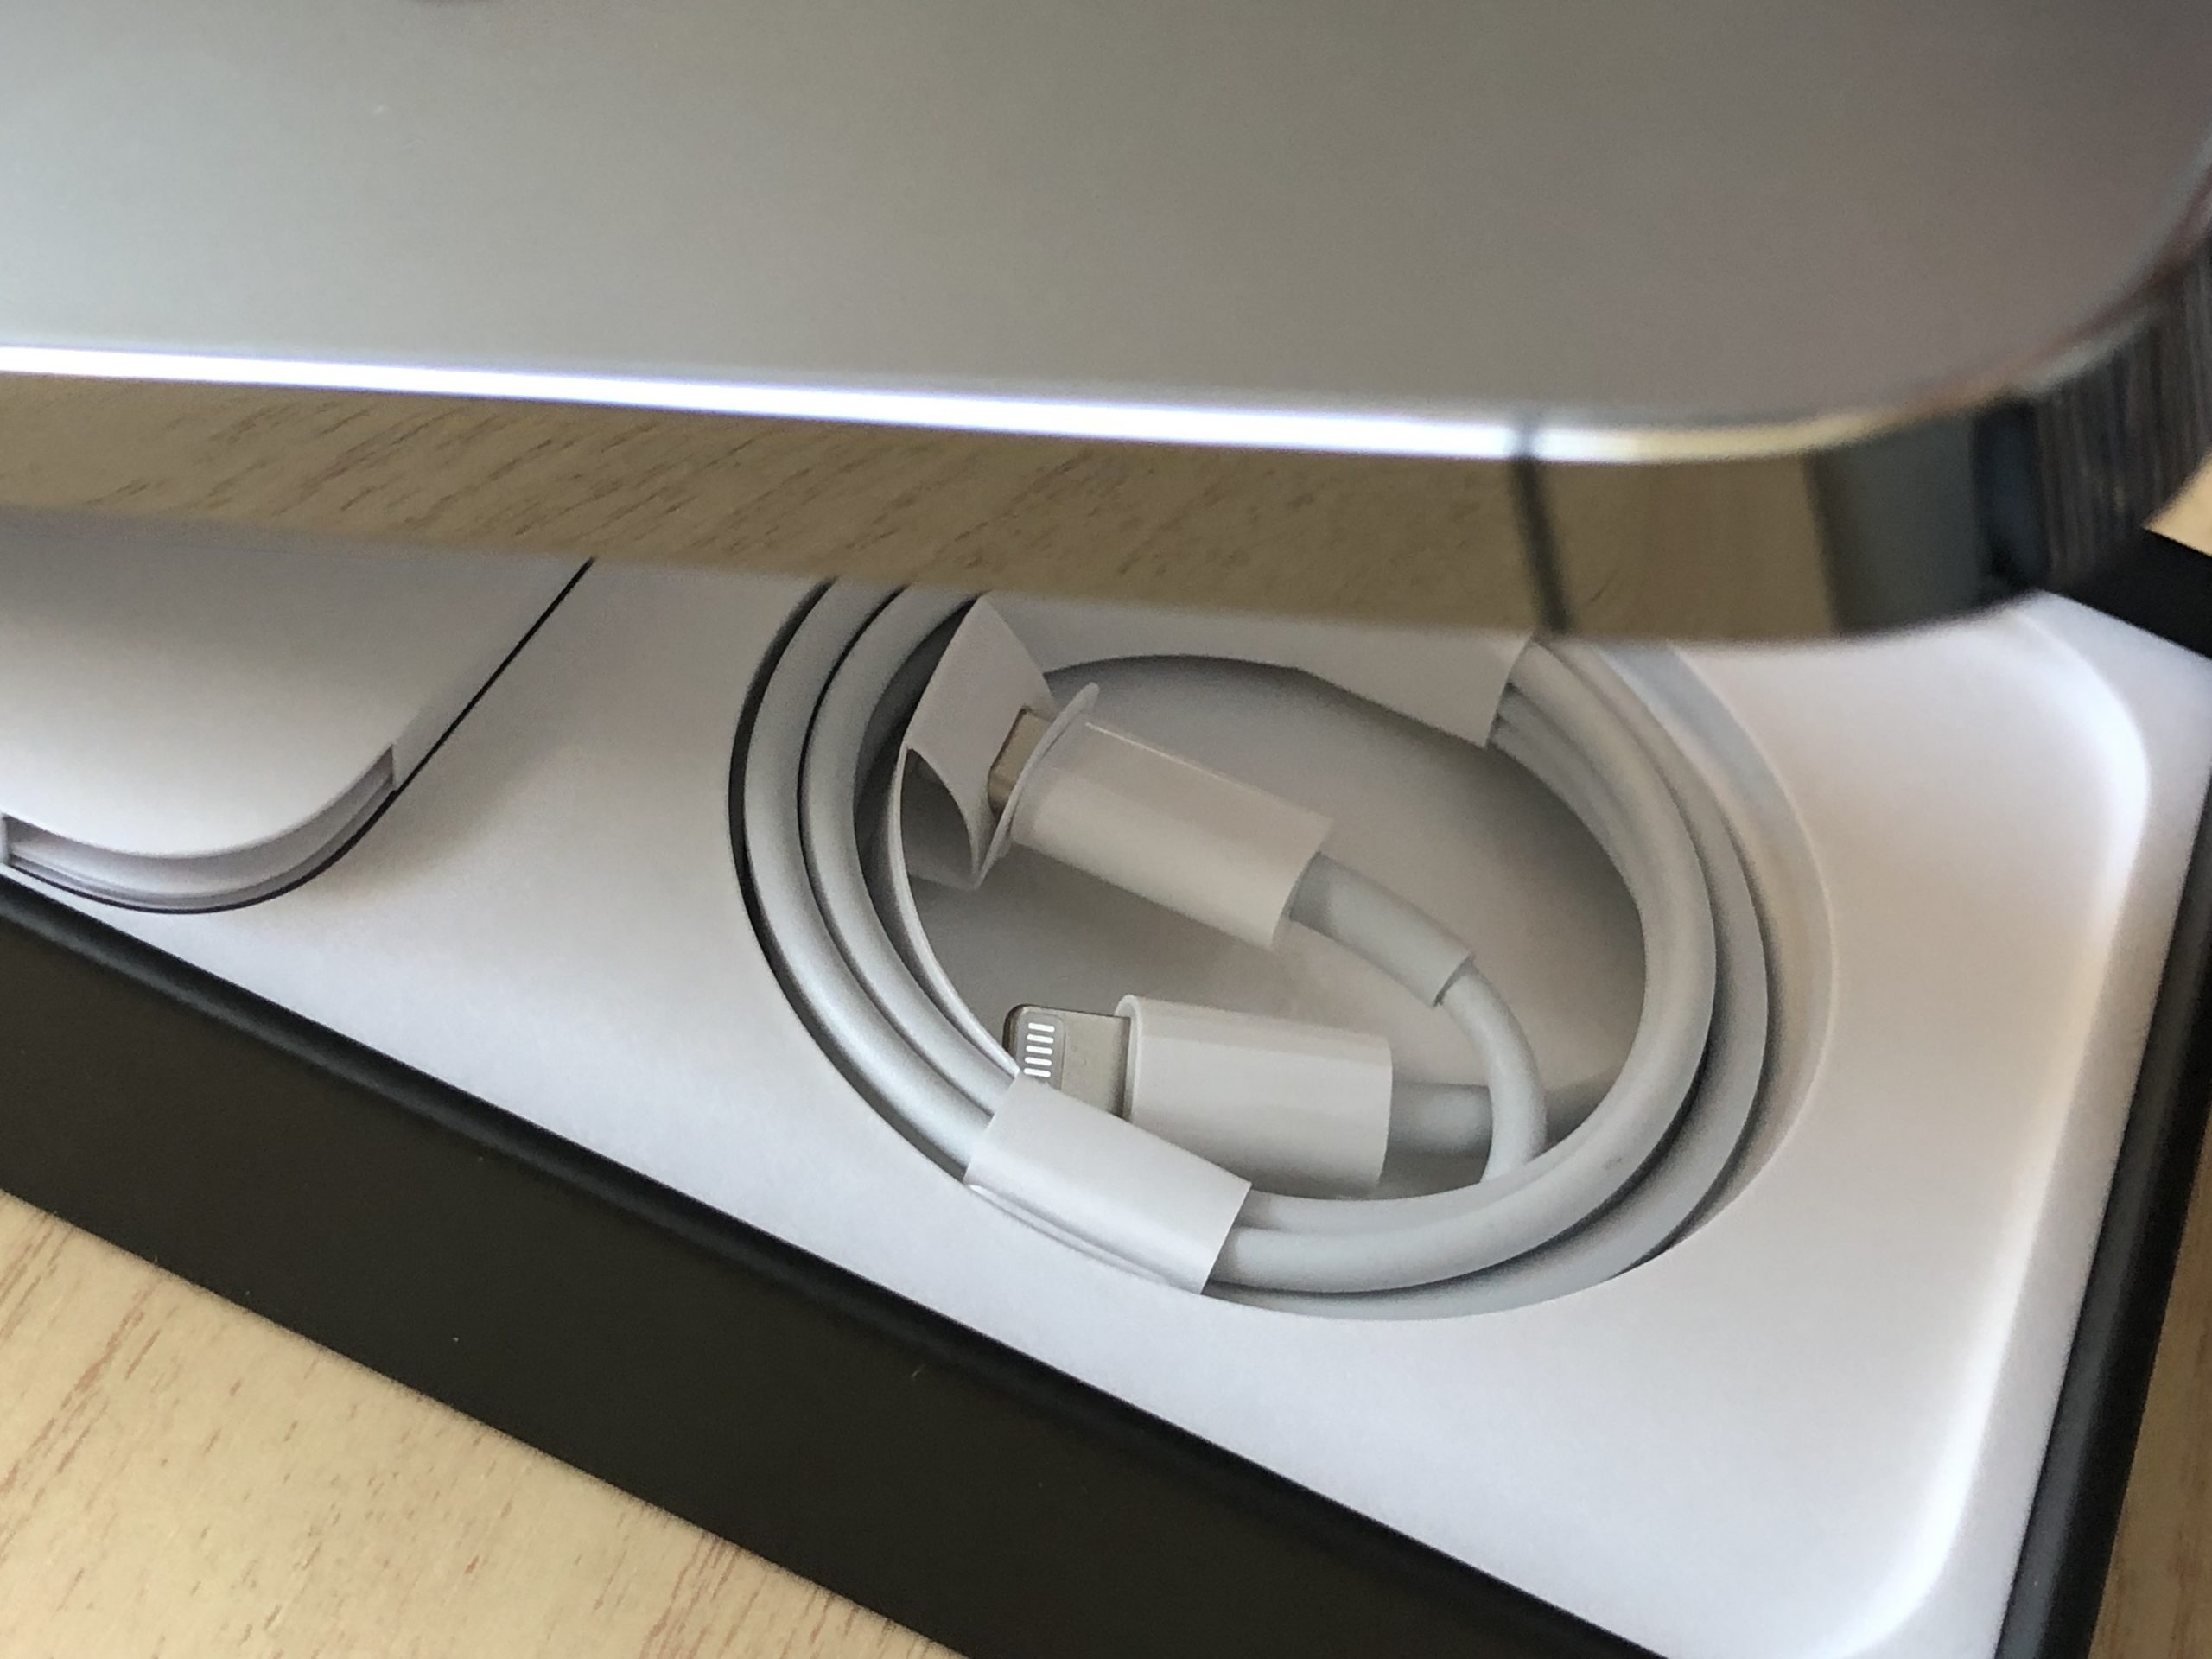 Caja del iPhone 13 Pro Max con el cable Lightning a USB-C